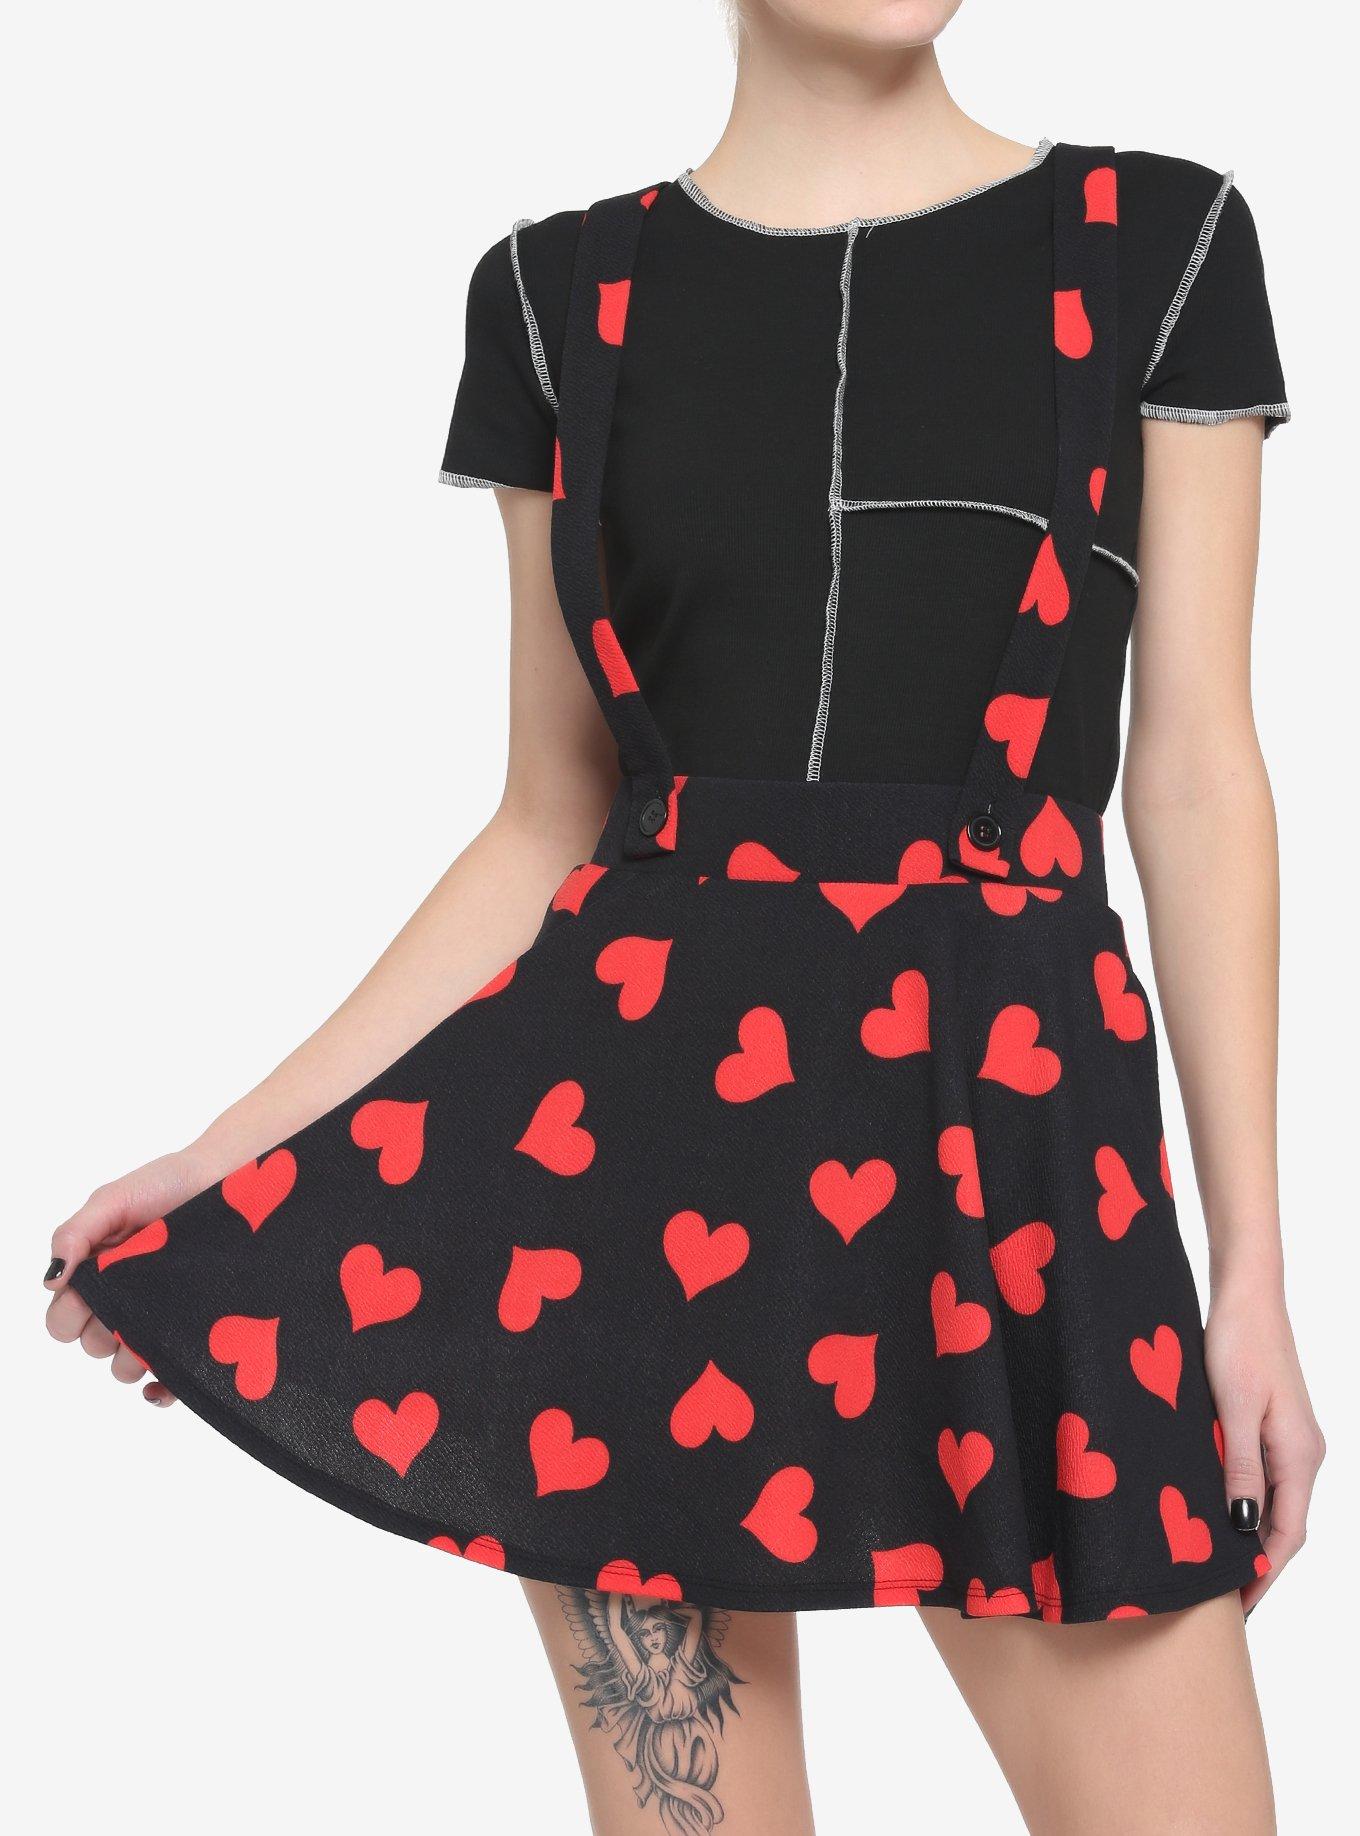 Red Hearts Black Suspender Skirt, PINK, hi-res